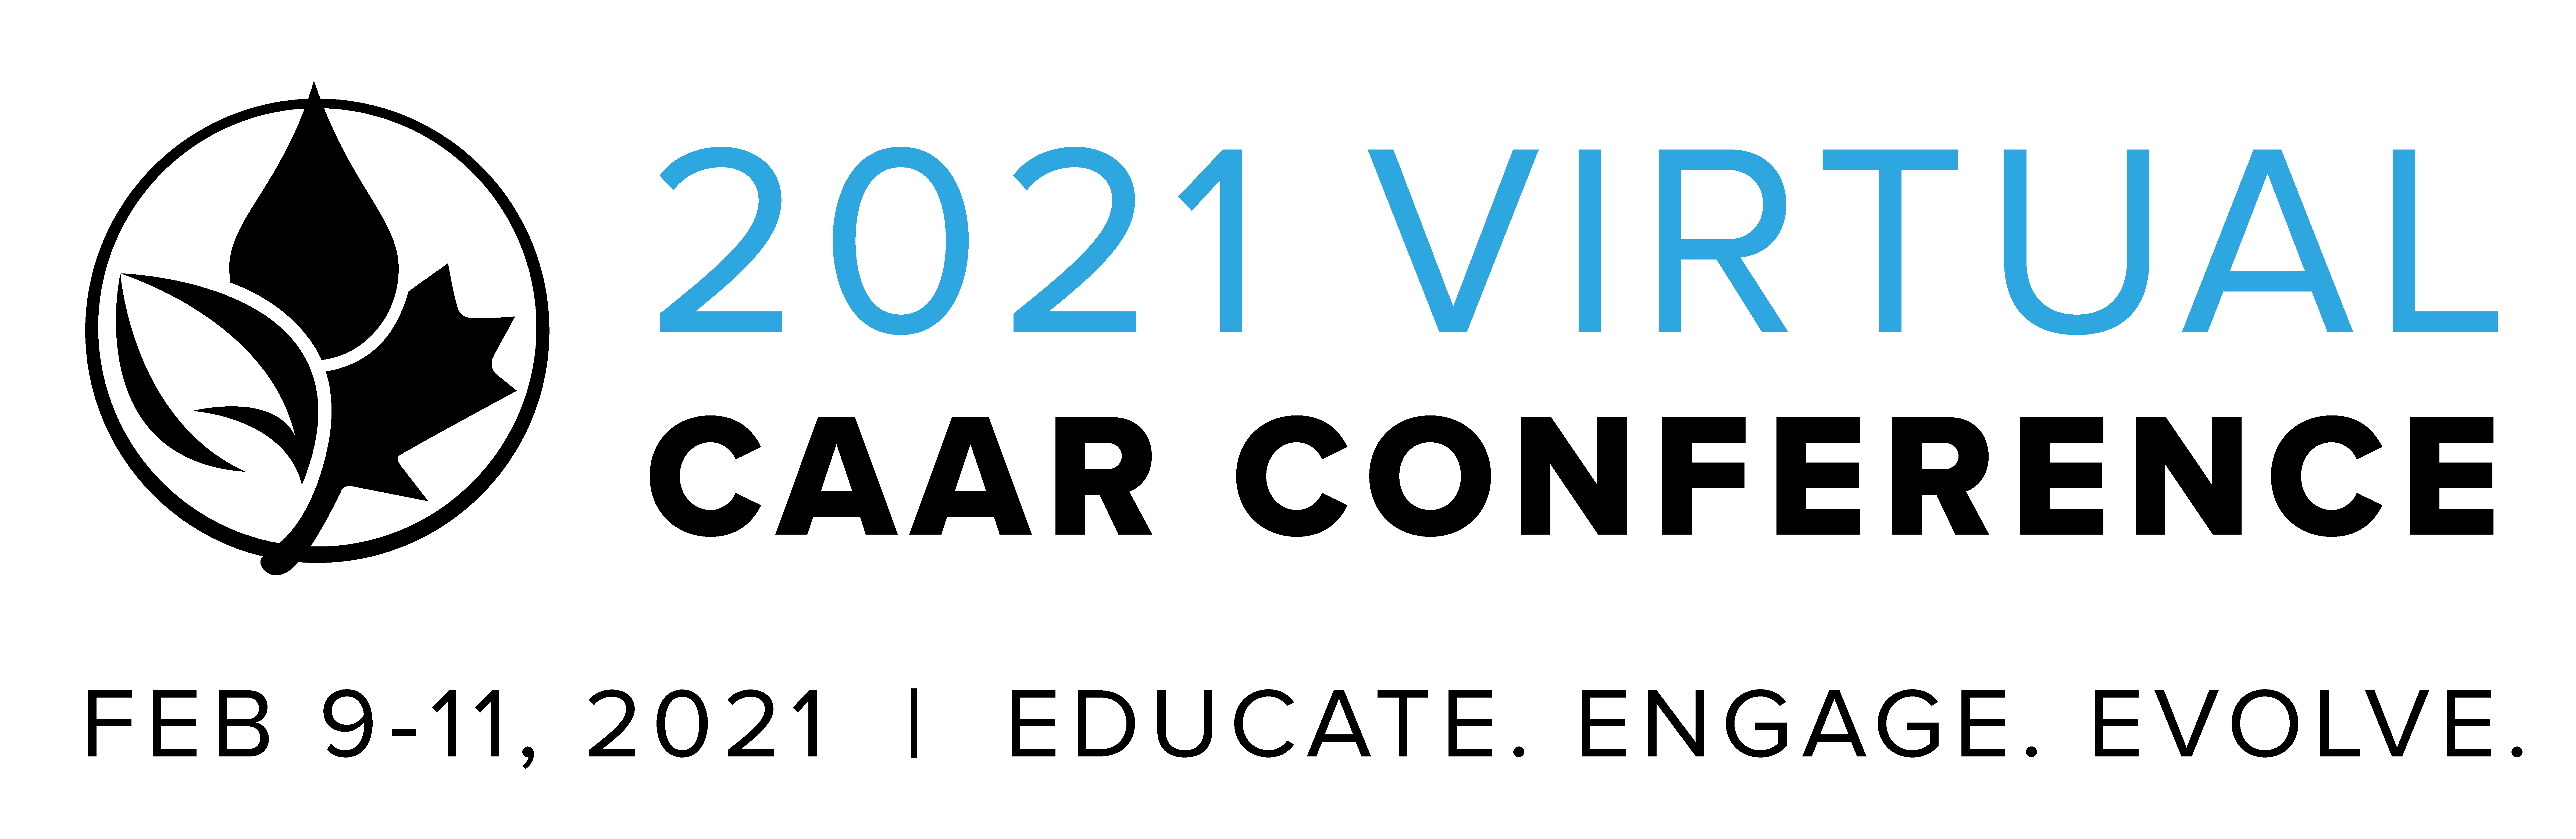 CAAR Conference